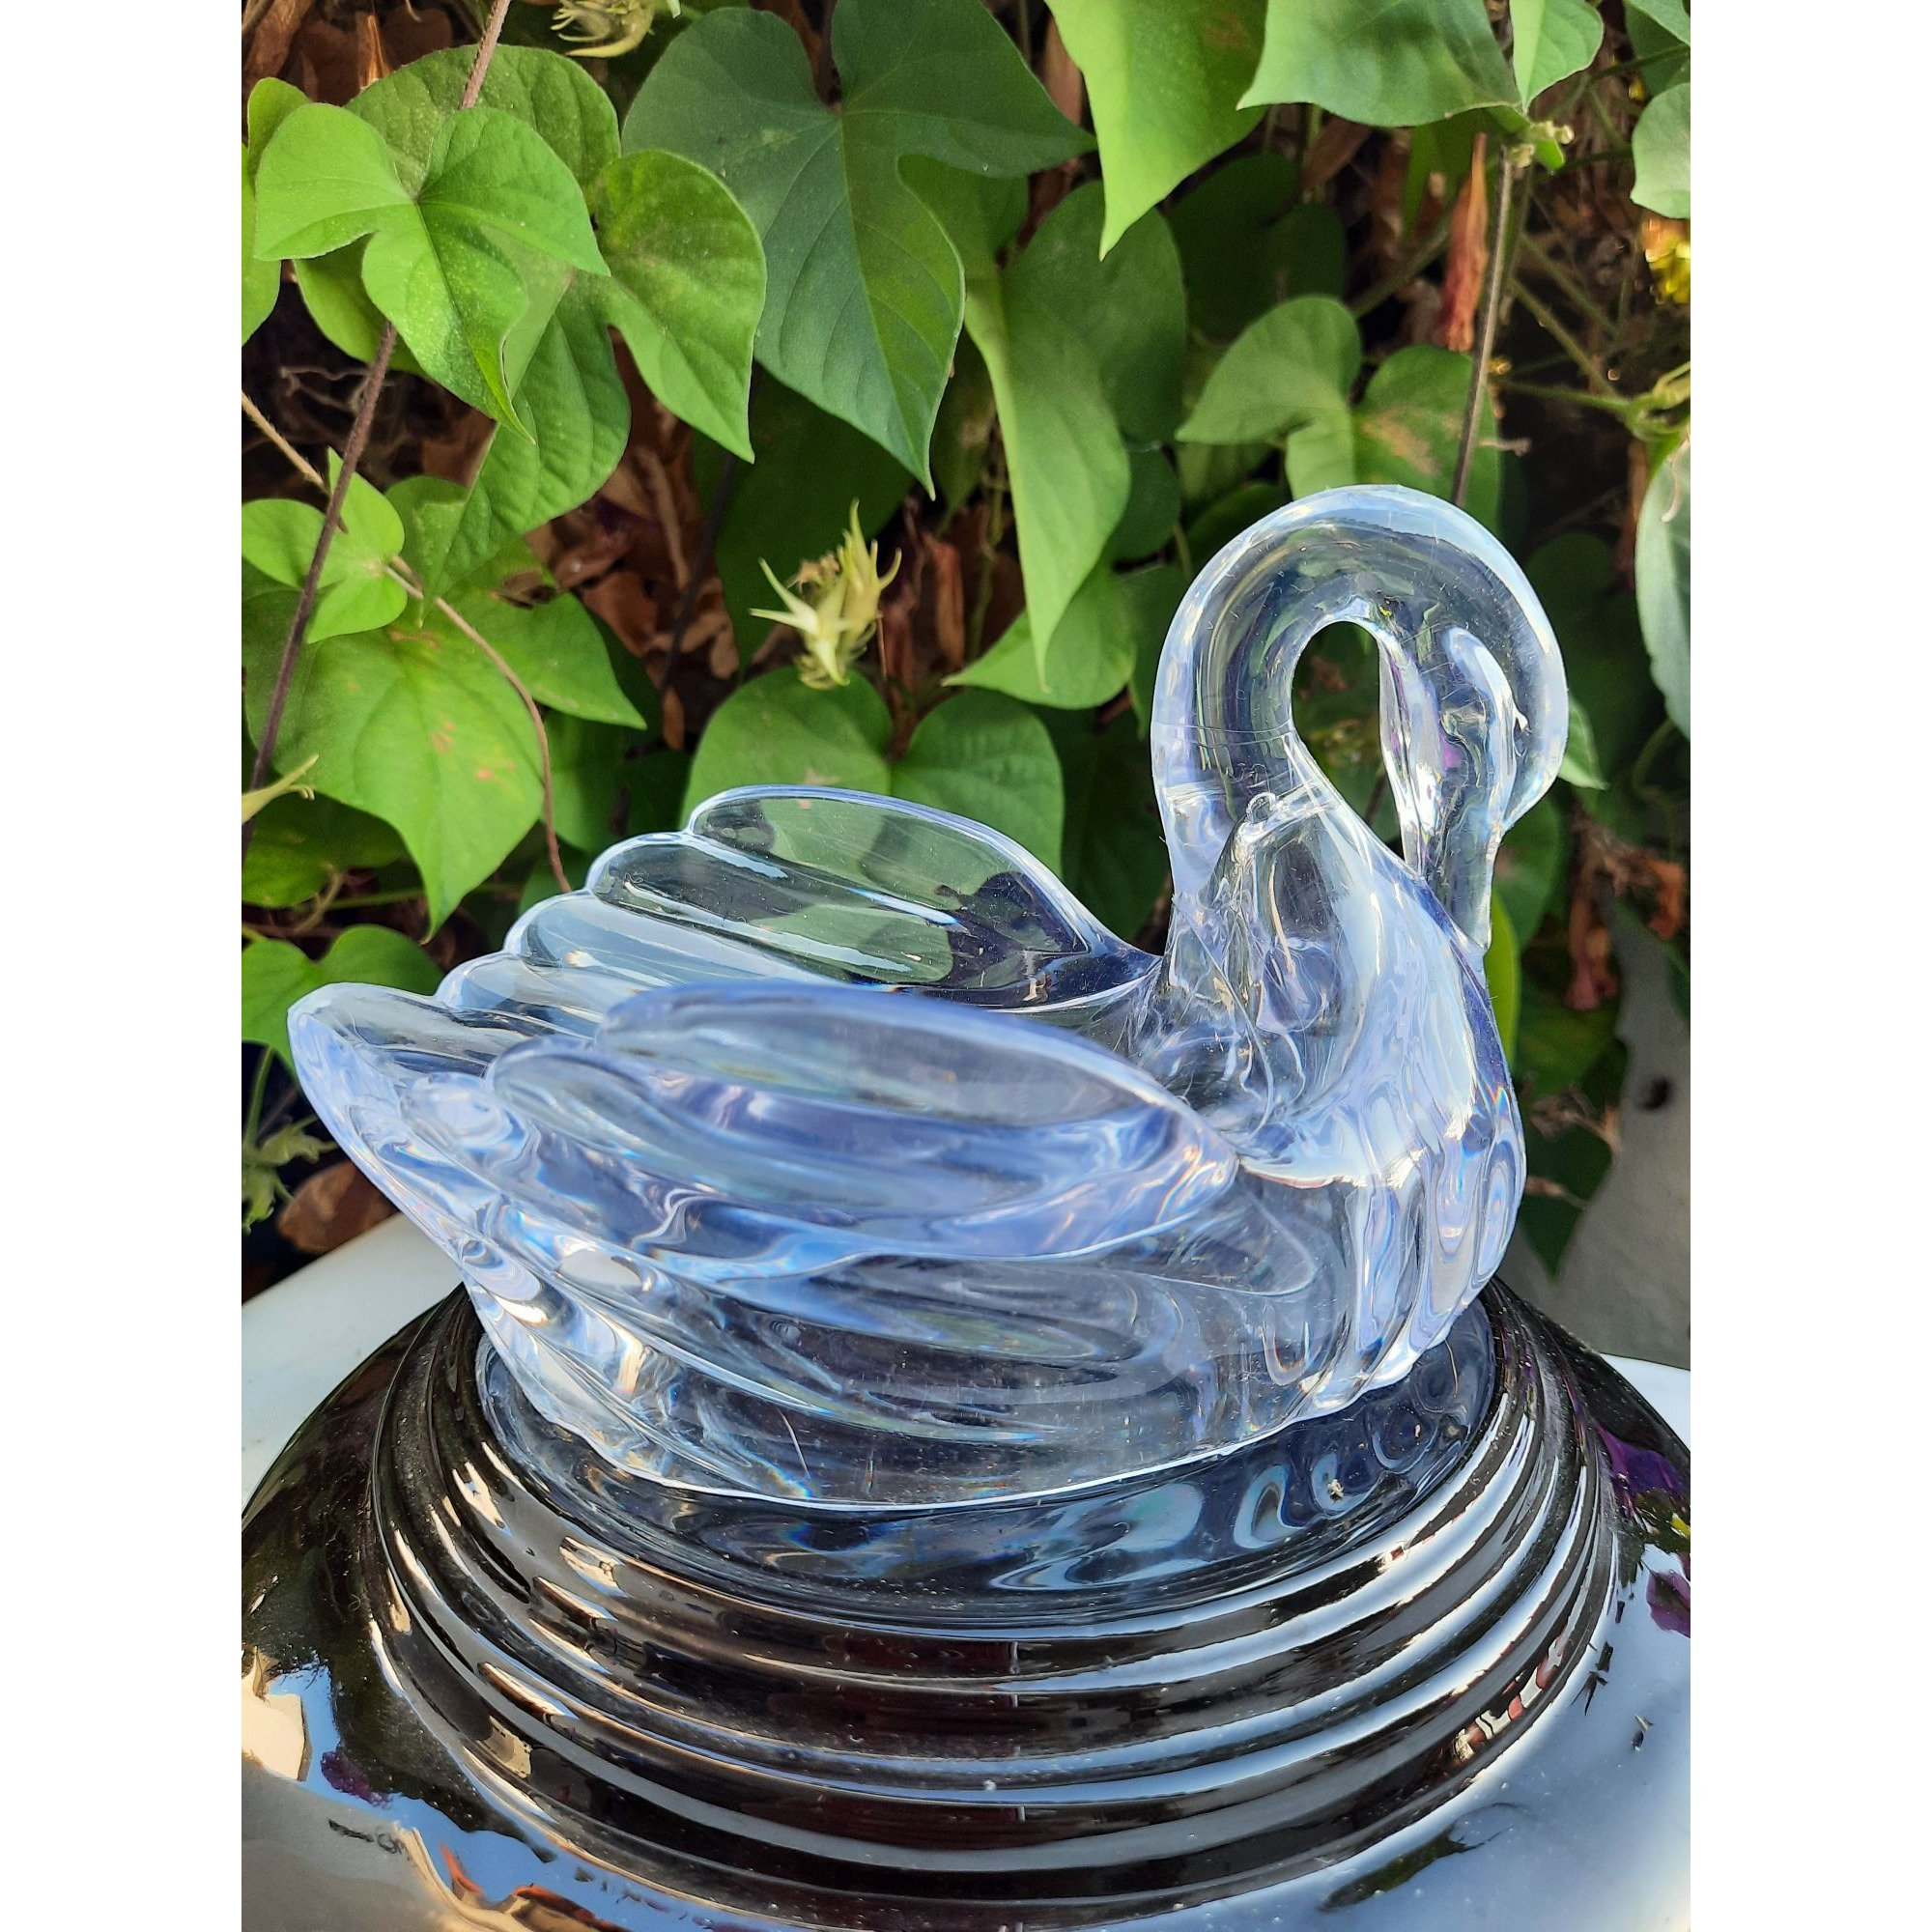 Spring Cleaning, Zacken Blaue Plastikschüssel Mit Seifenschaum, Gummi G Aus  Stockfoto - Bild von zuhause, seife: 107989998